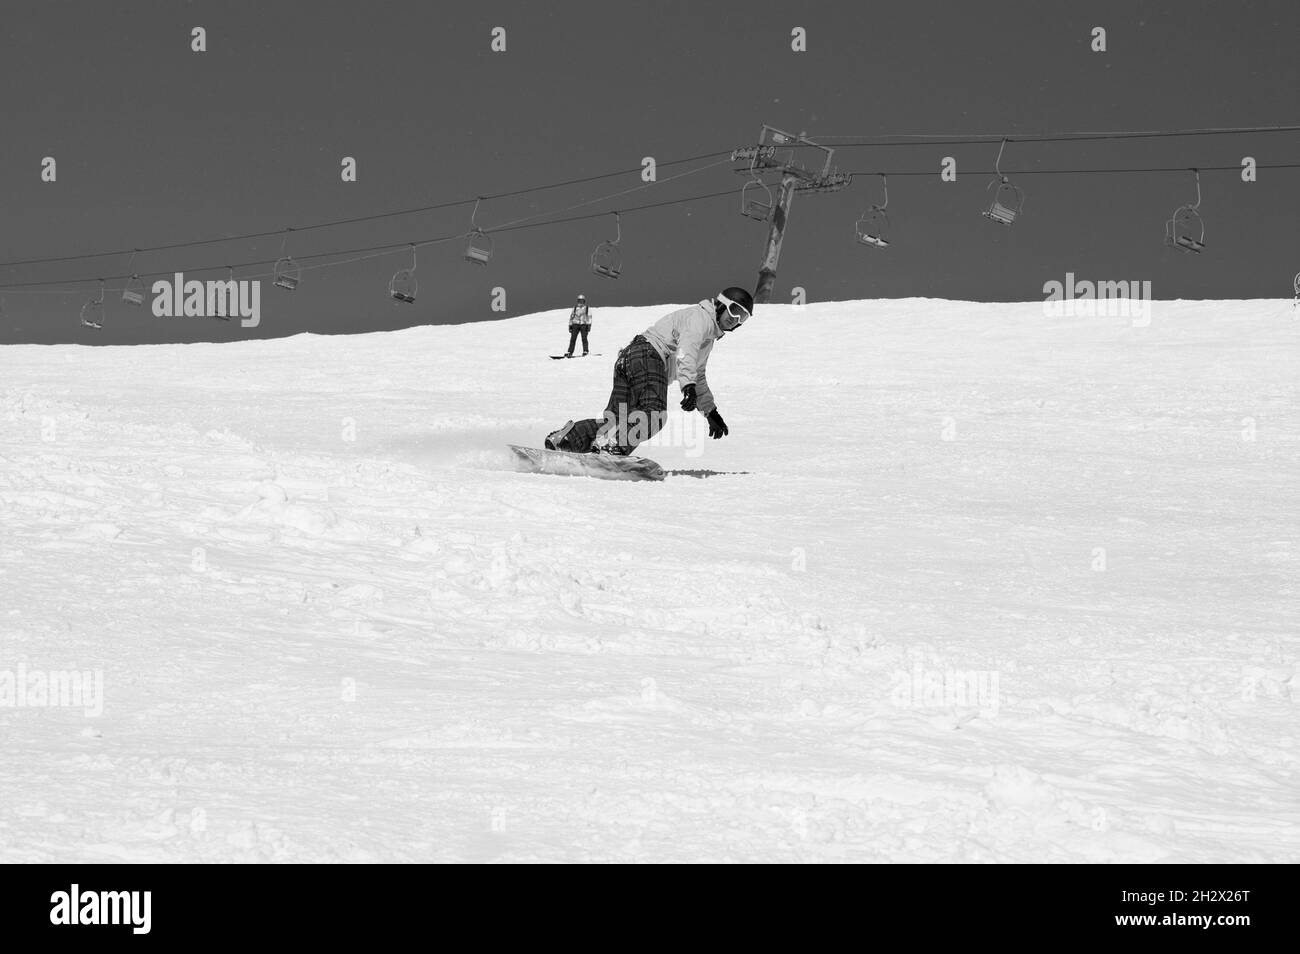 La snowboardeuse descend sur une piste de ski enneigée dans les montagnes d'hiver par beau temps.Télésiège et ciel avec neige en arrière-plan.Caucase montagnes, région Dombay Banque D'Images